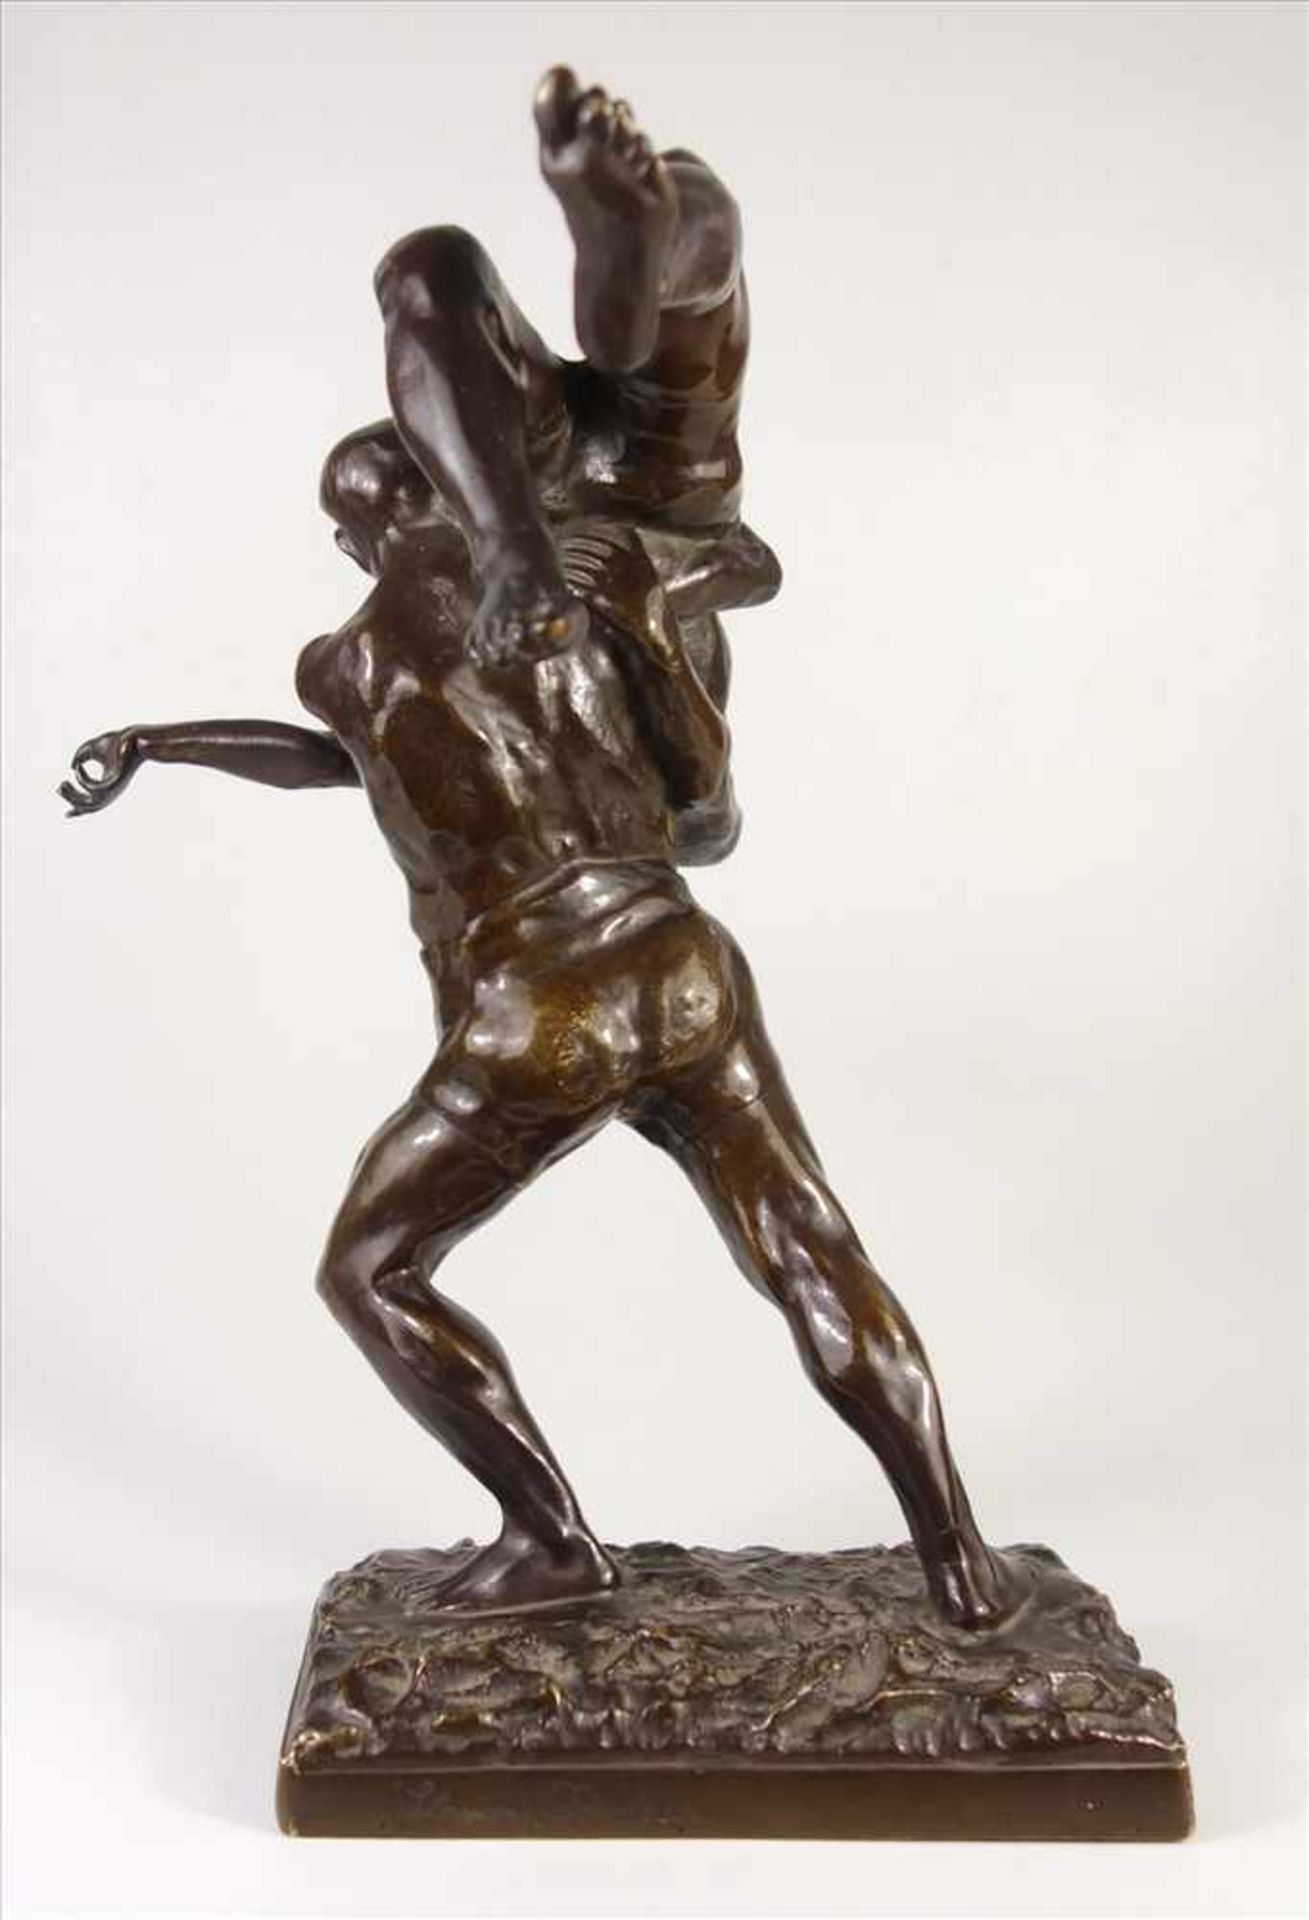 Joseph Alfred van Gent "Ringer", Bronze-Figurengruppe um 1900, van Gent, geb 1877; in Plinthe - Bild 3 aus 6